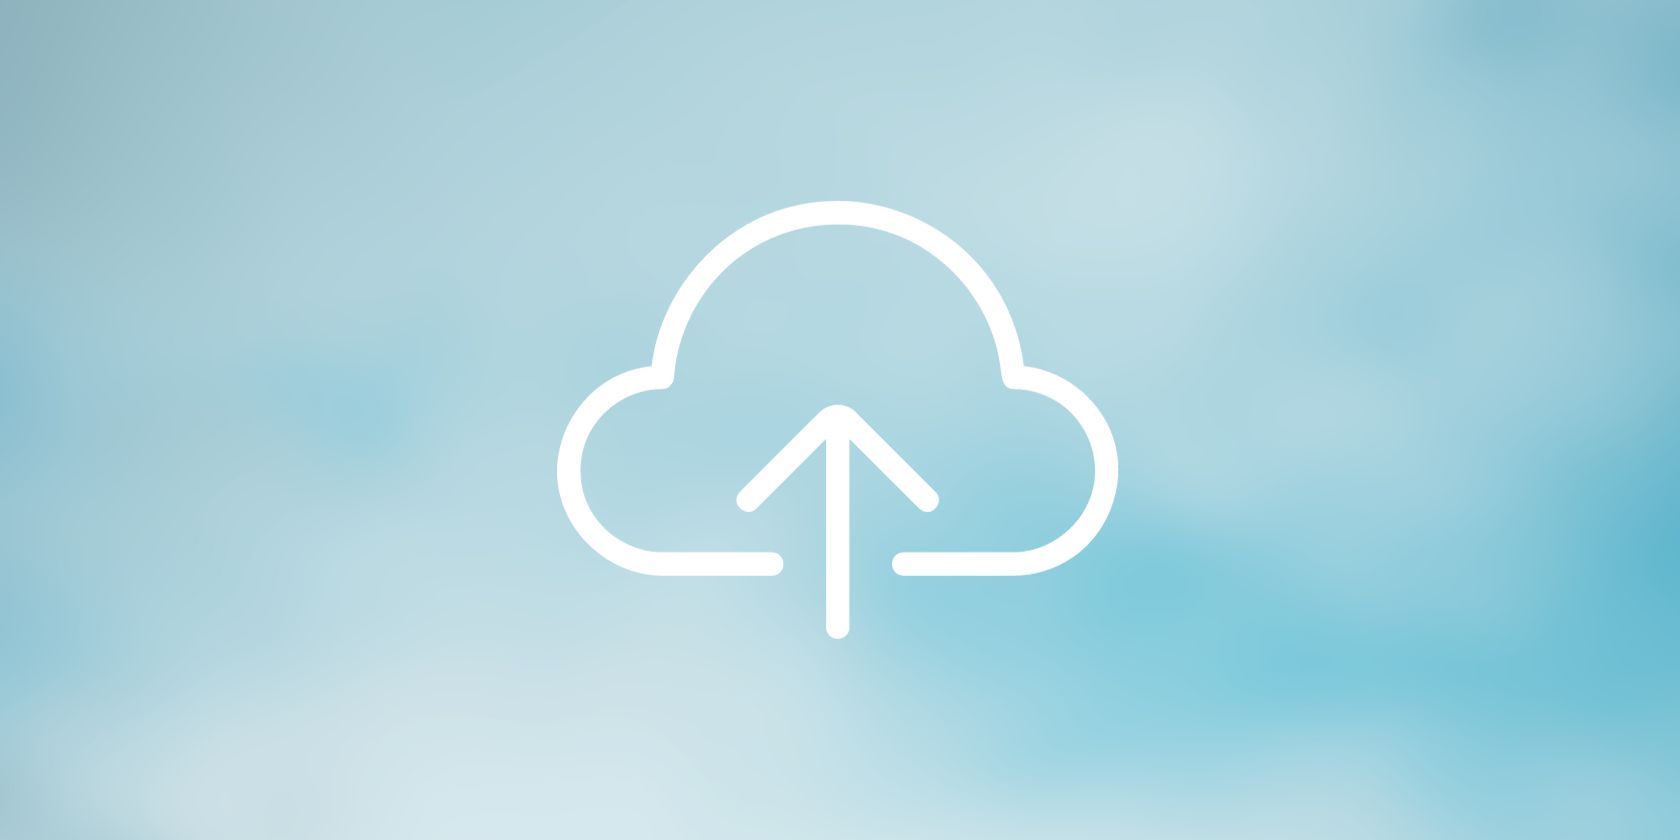 Simbol de stocare în cloud pe fundal albastru deschis